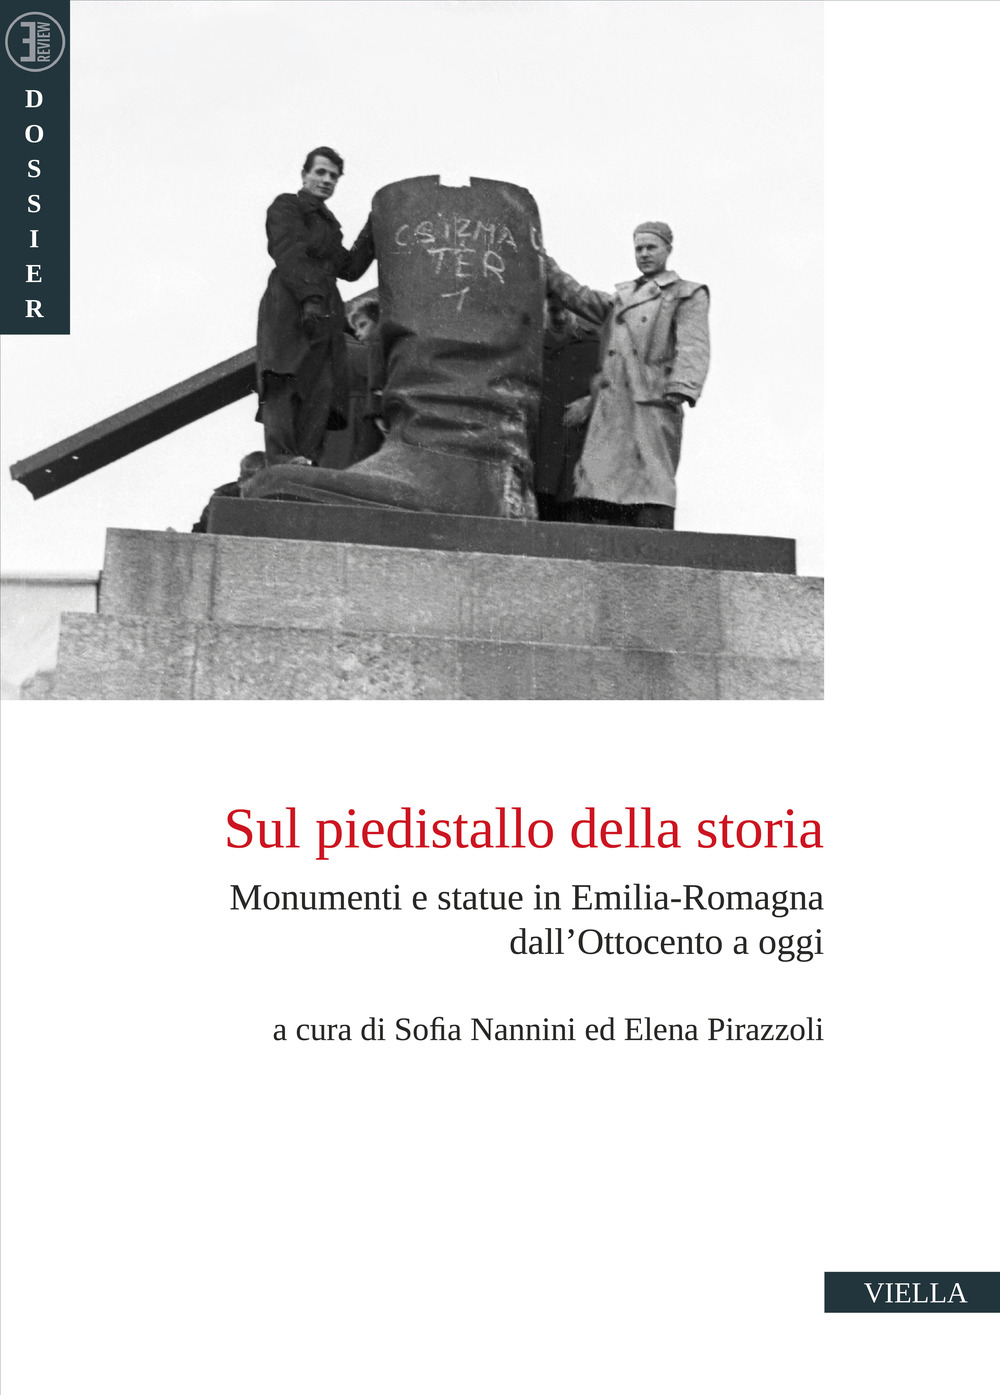 Sul piedistallo della storia. Monumenti e statue in Emilia-Romagna dall'Ottocento a oggi